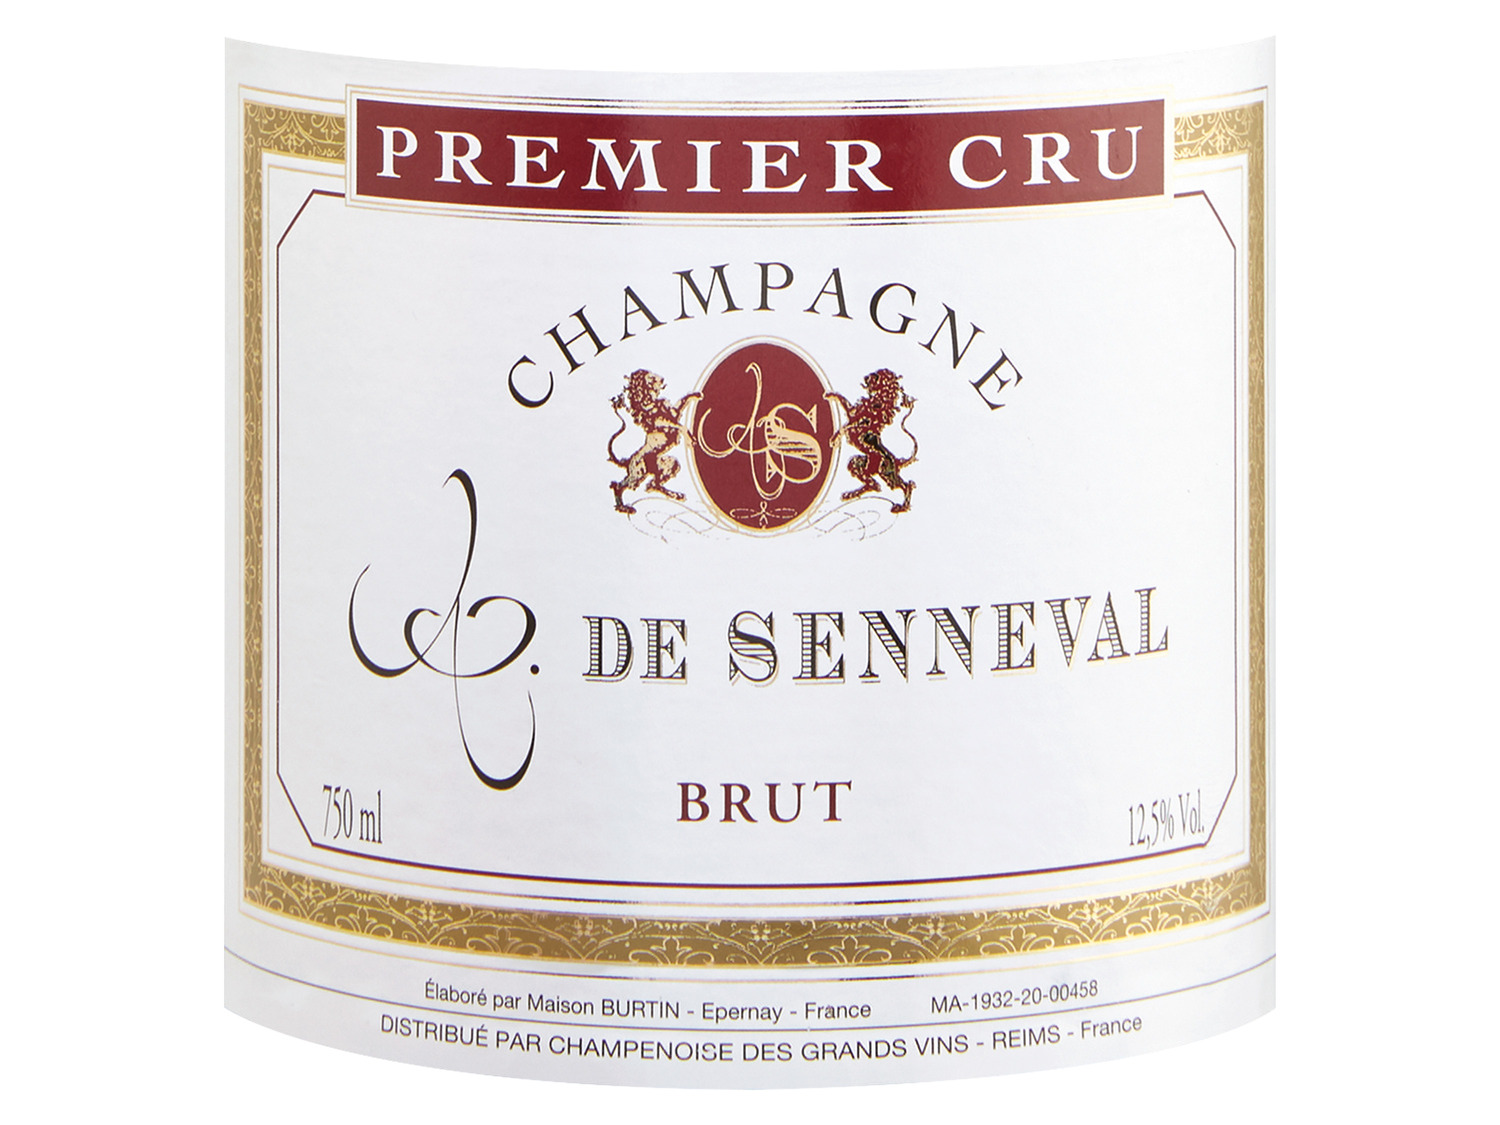 Comte de Senneval Champagner Premier brut, Cru 2011